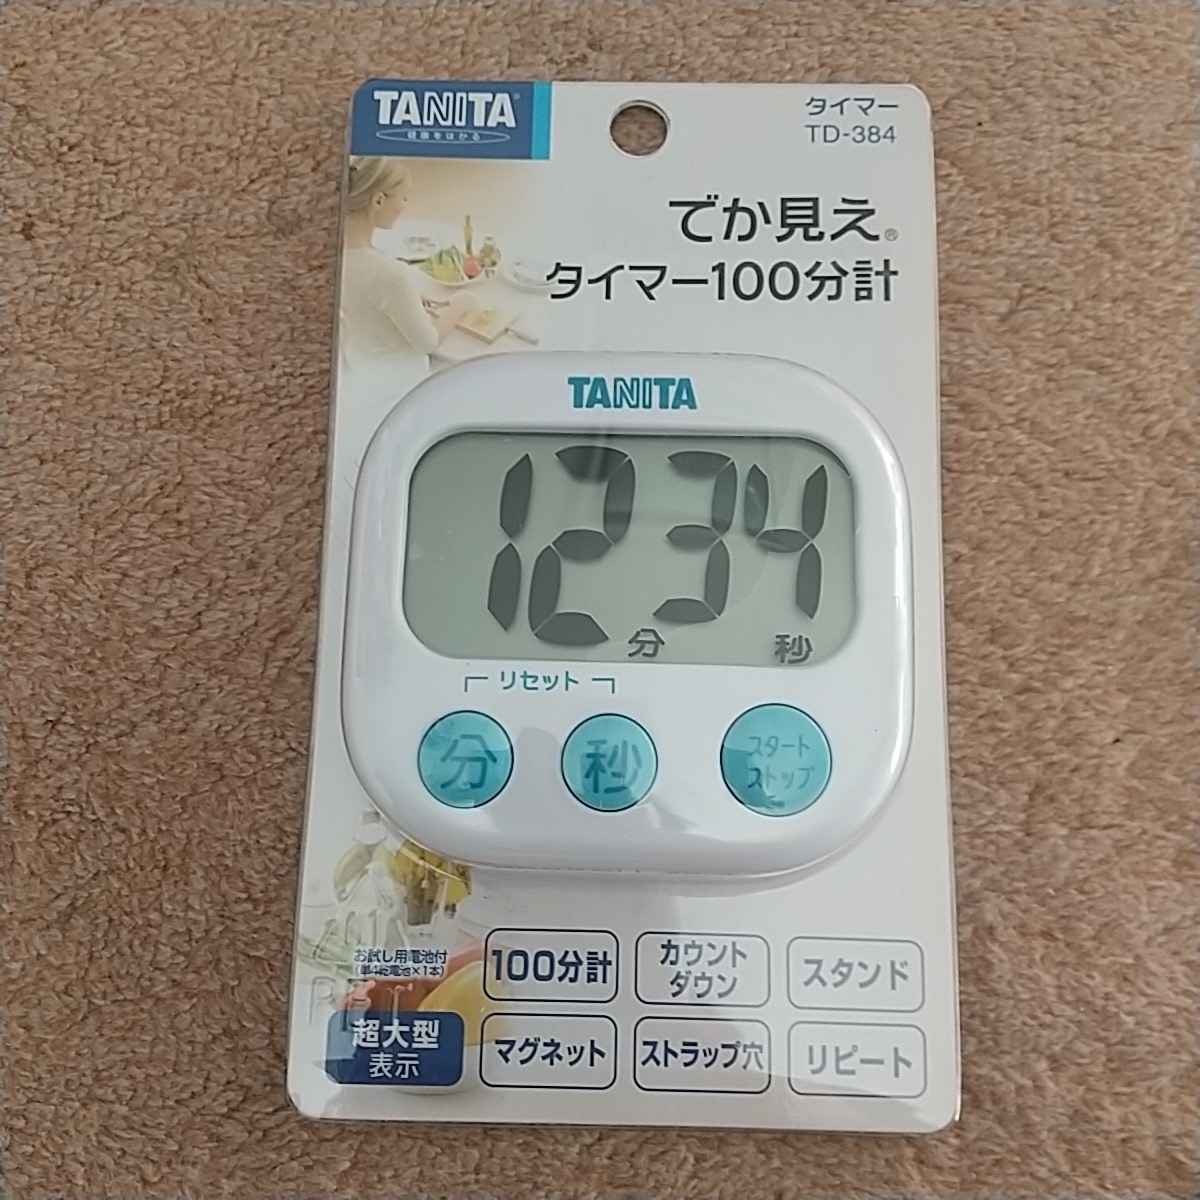 TANITA デジタルタイマー でか見えタイマー TD-384 ホワイト 通販